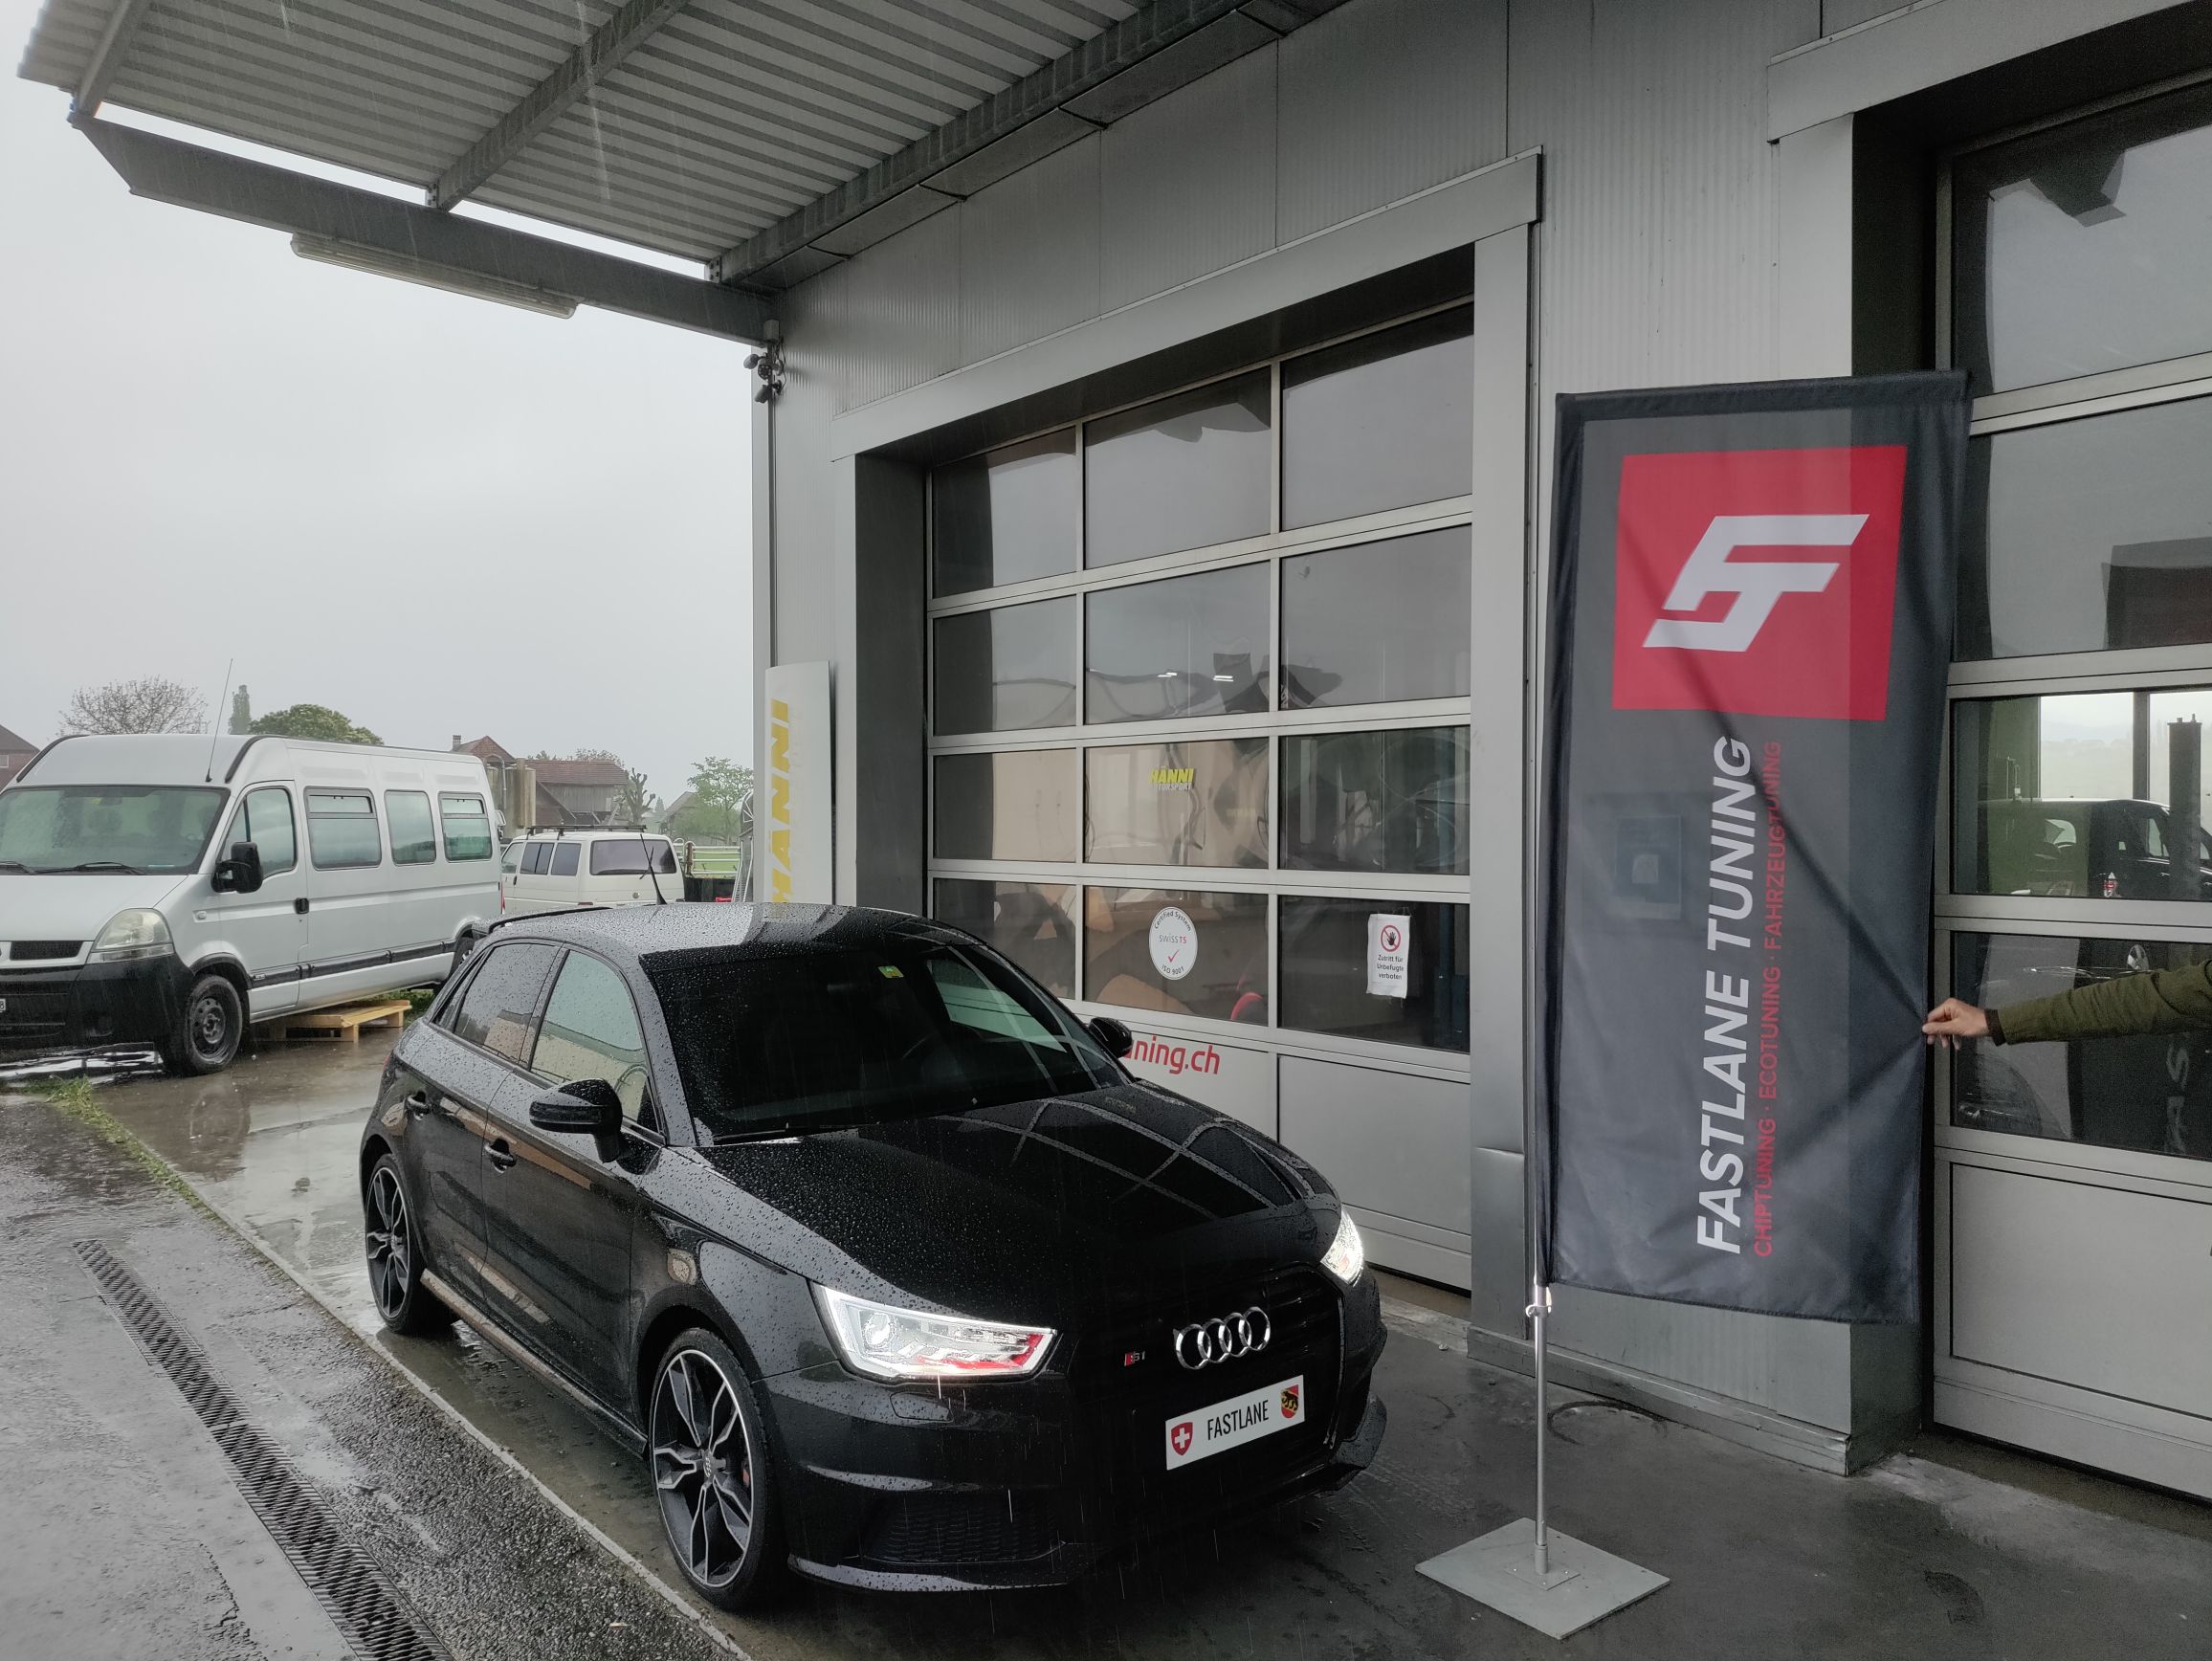 Ein schwarzer Audi S1 parkt vor der Garage neben der Fastlane Tuning Schweiz-Fahne